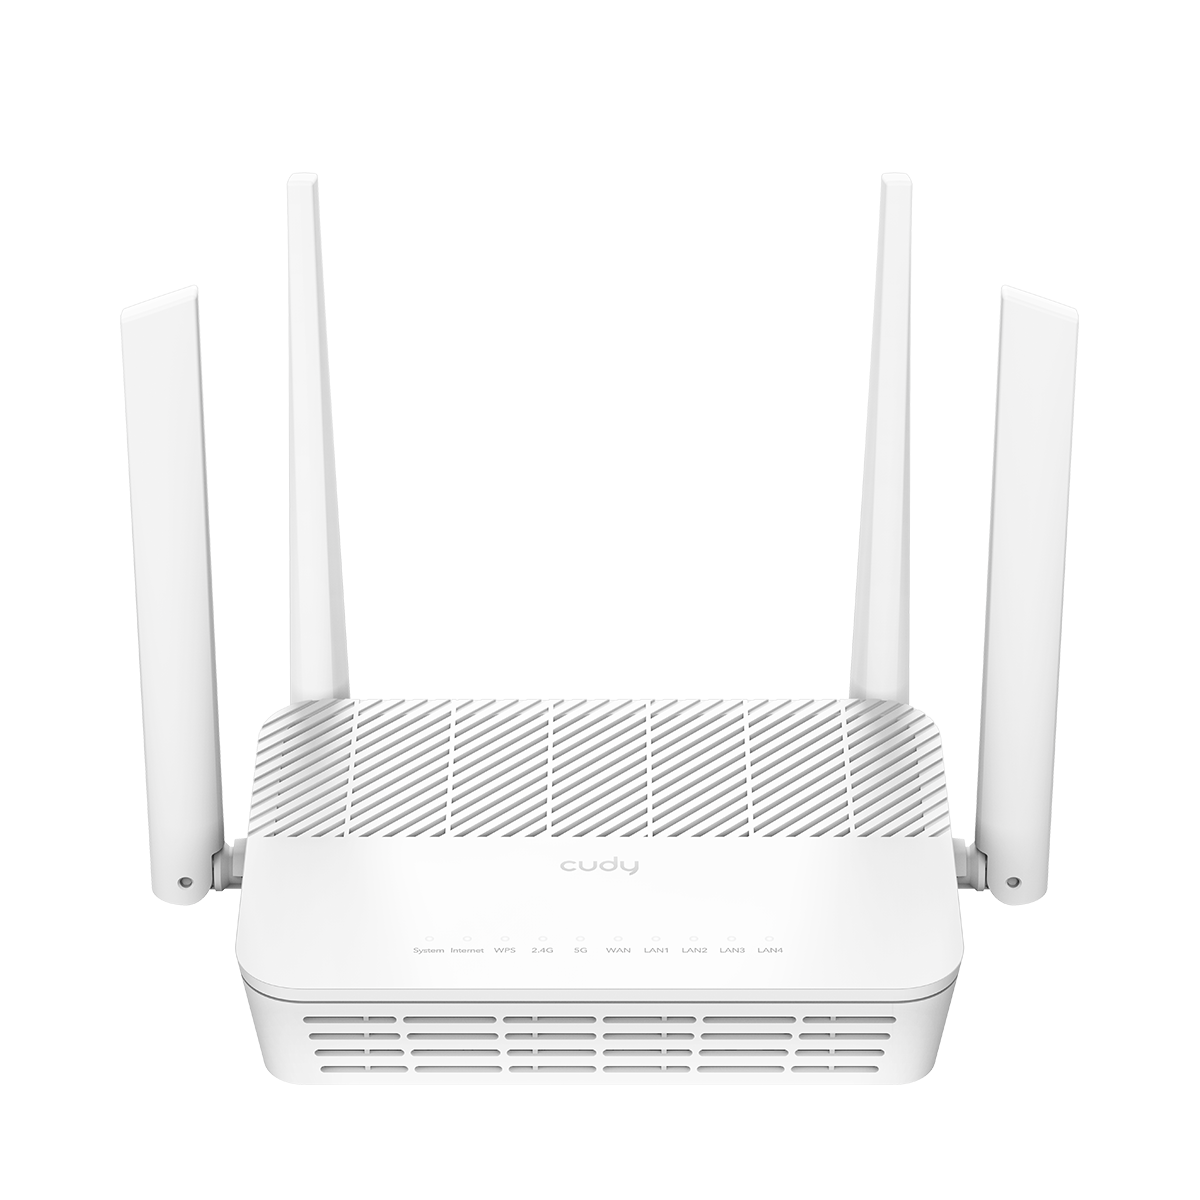 AX3000 Gigabit Mesh Wi-Fi 6 Router White, WR3000S 1.0